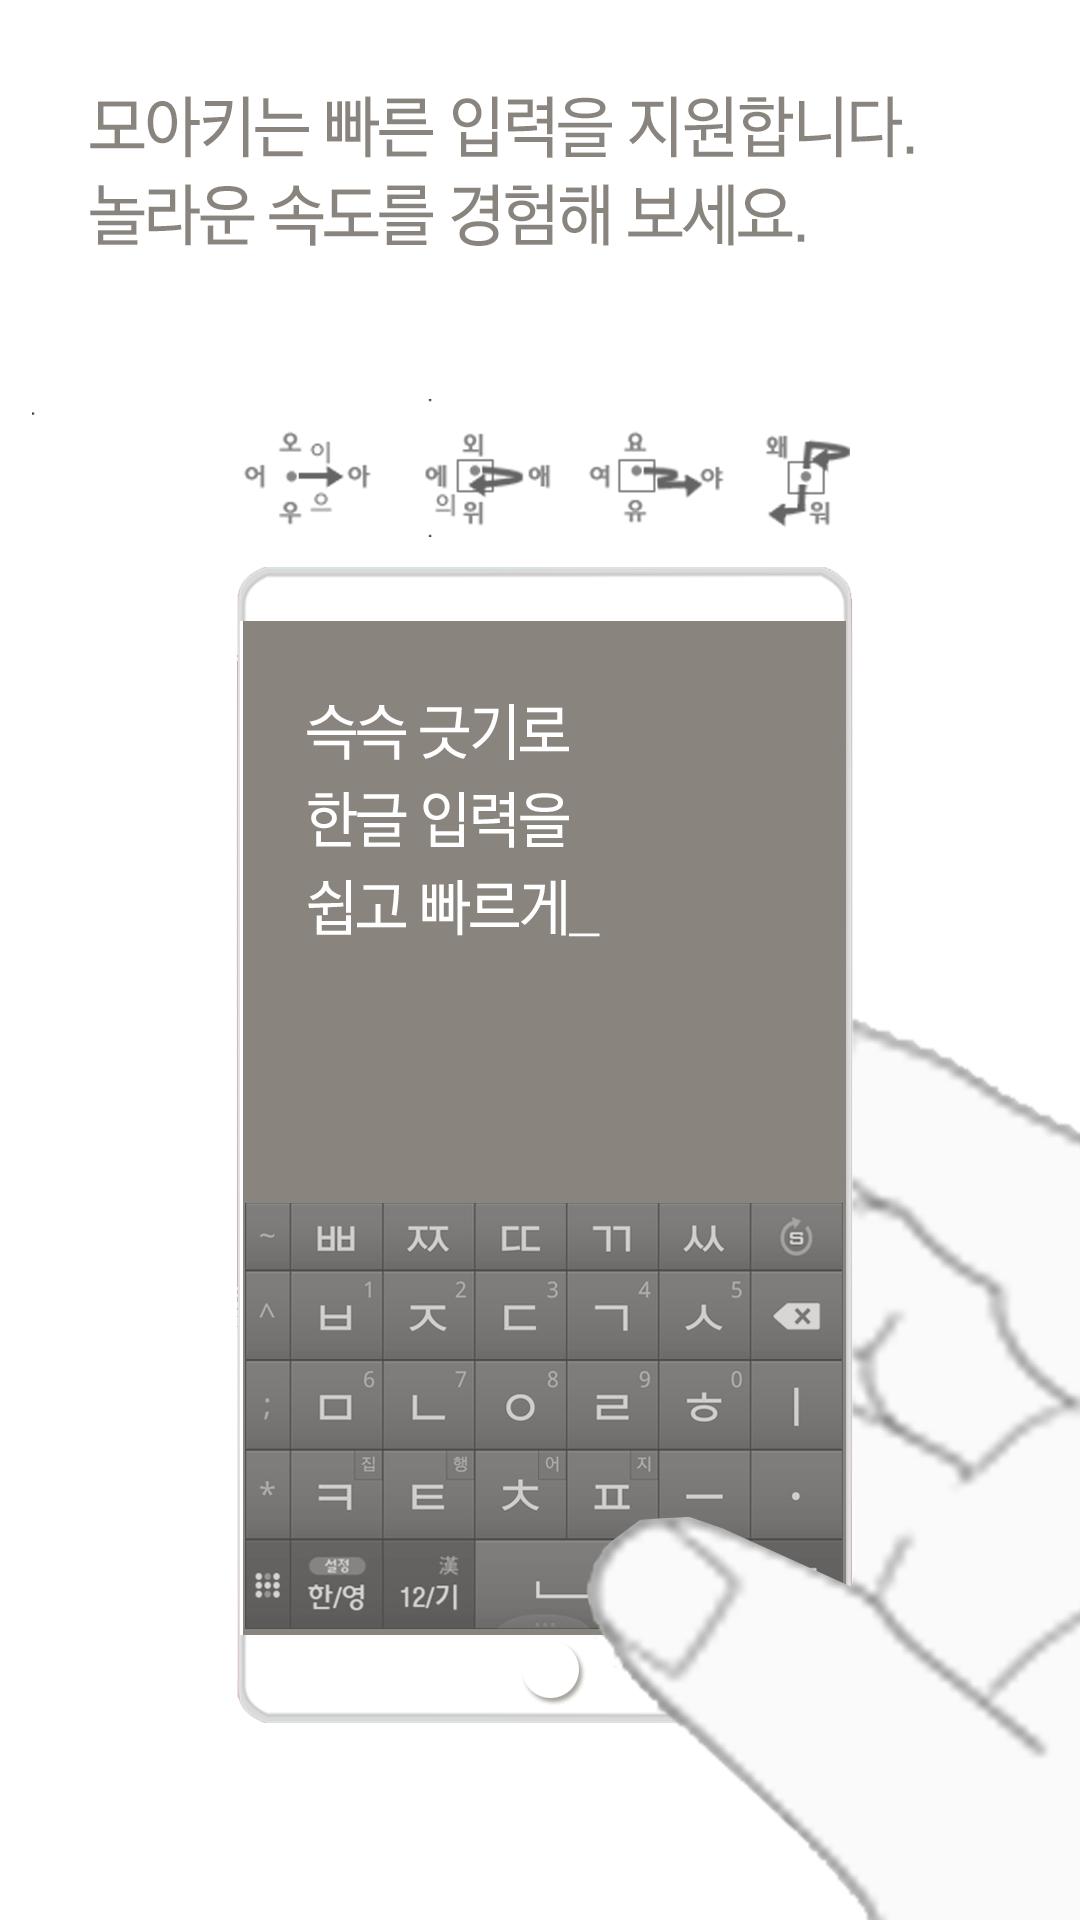 삼성 모아키 한글 키보드